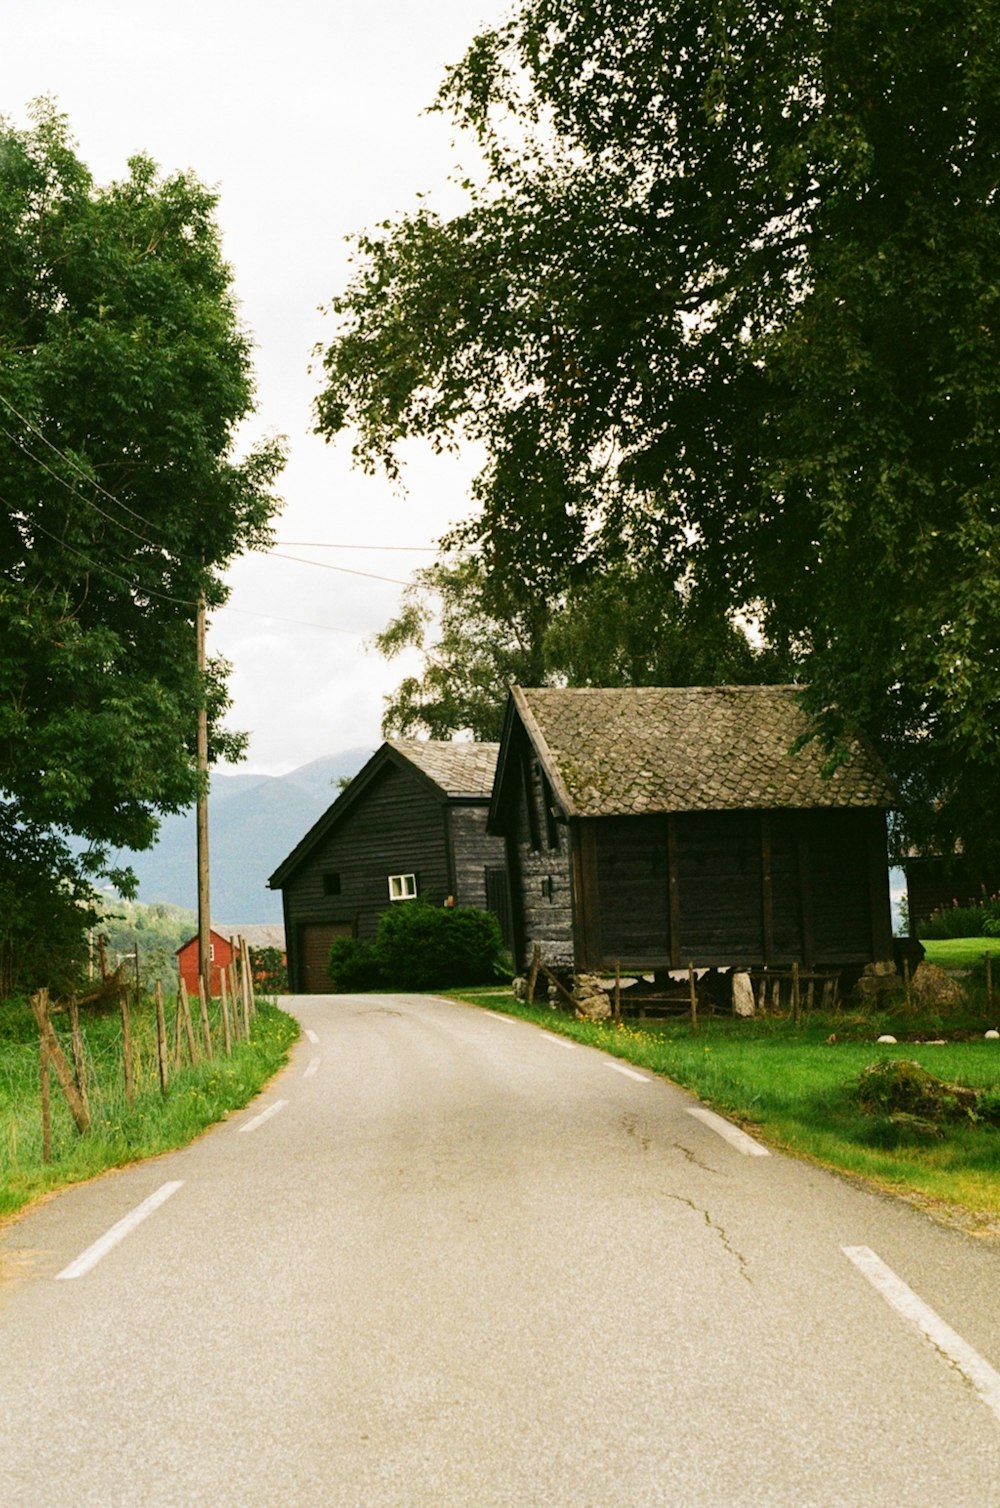 Un camino rural con una casa y árboles